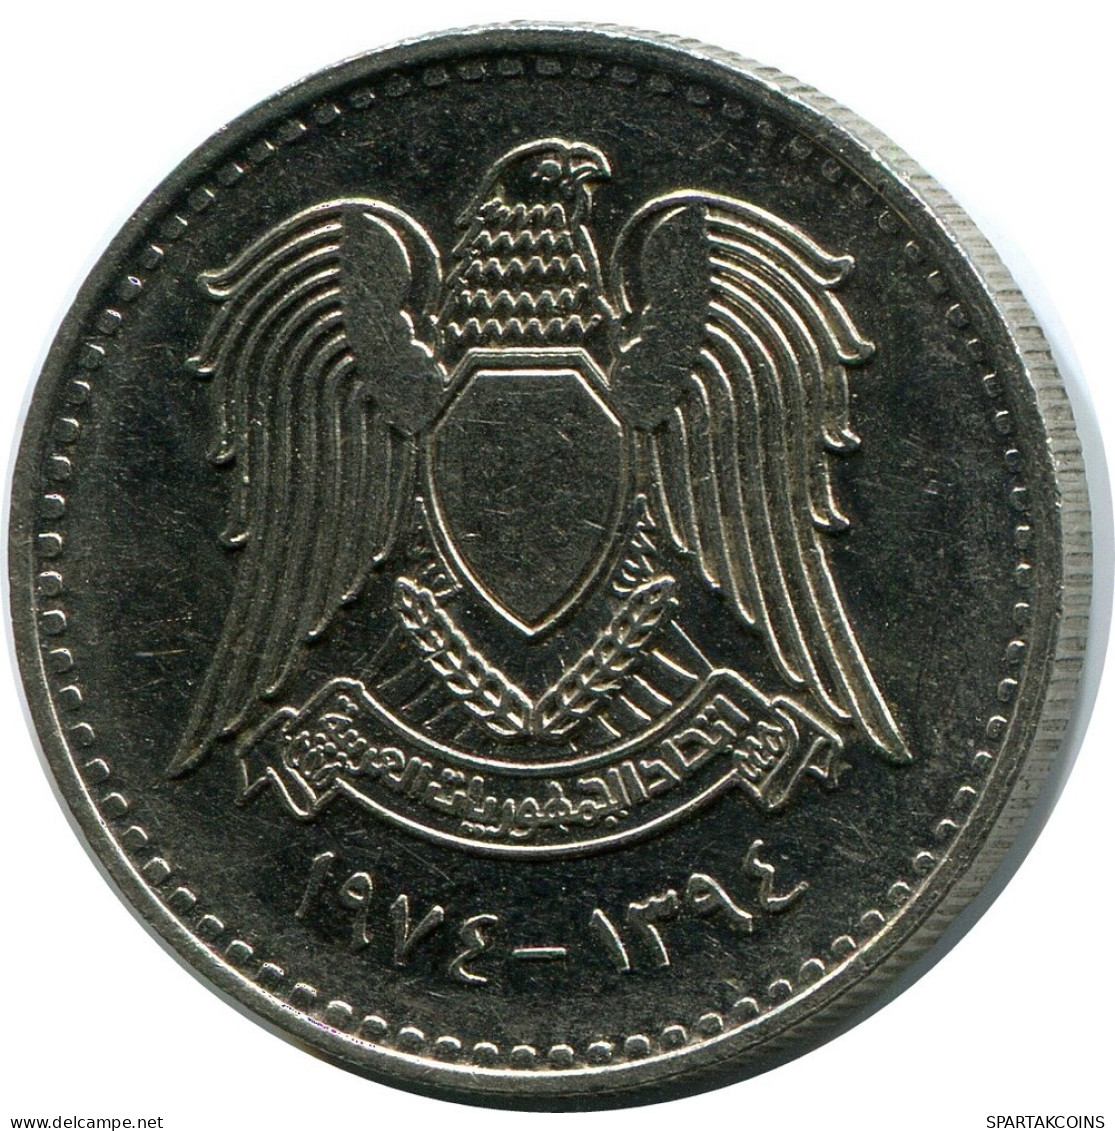 50 QIRSH 1974 SYRIA Islamic Coin #AR029.U.A - Siria